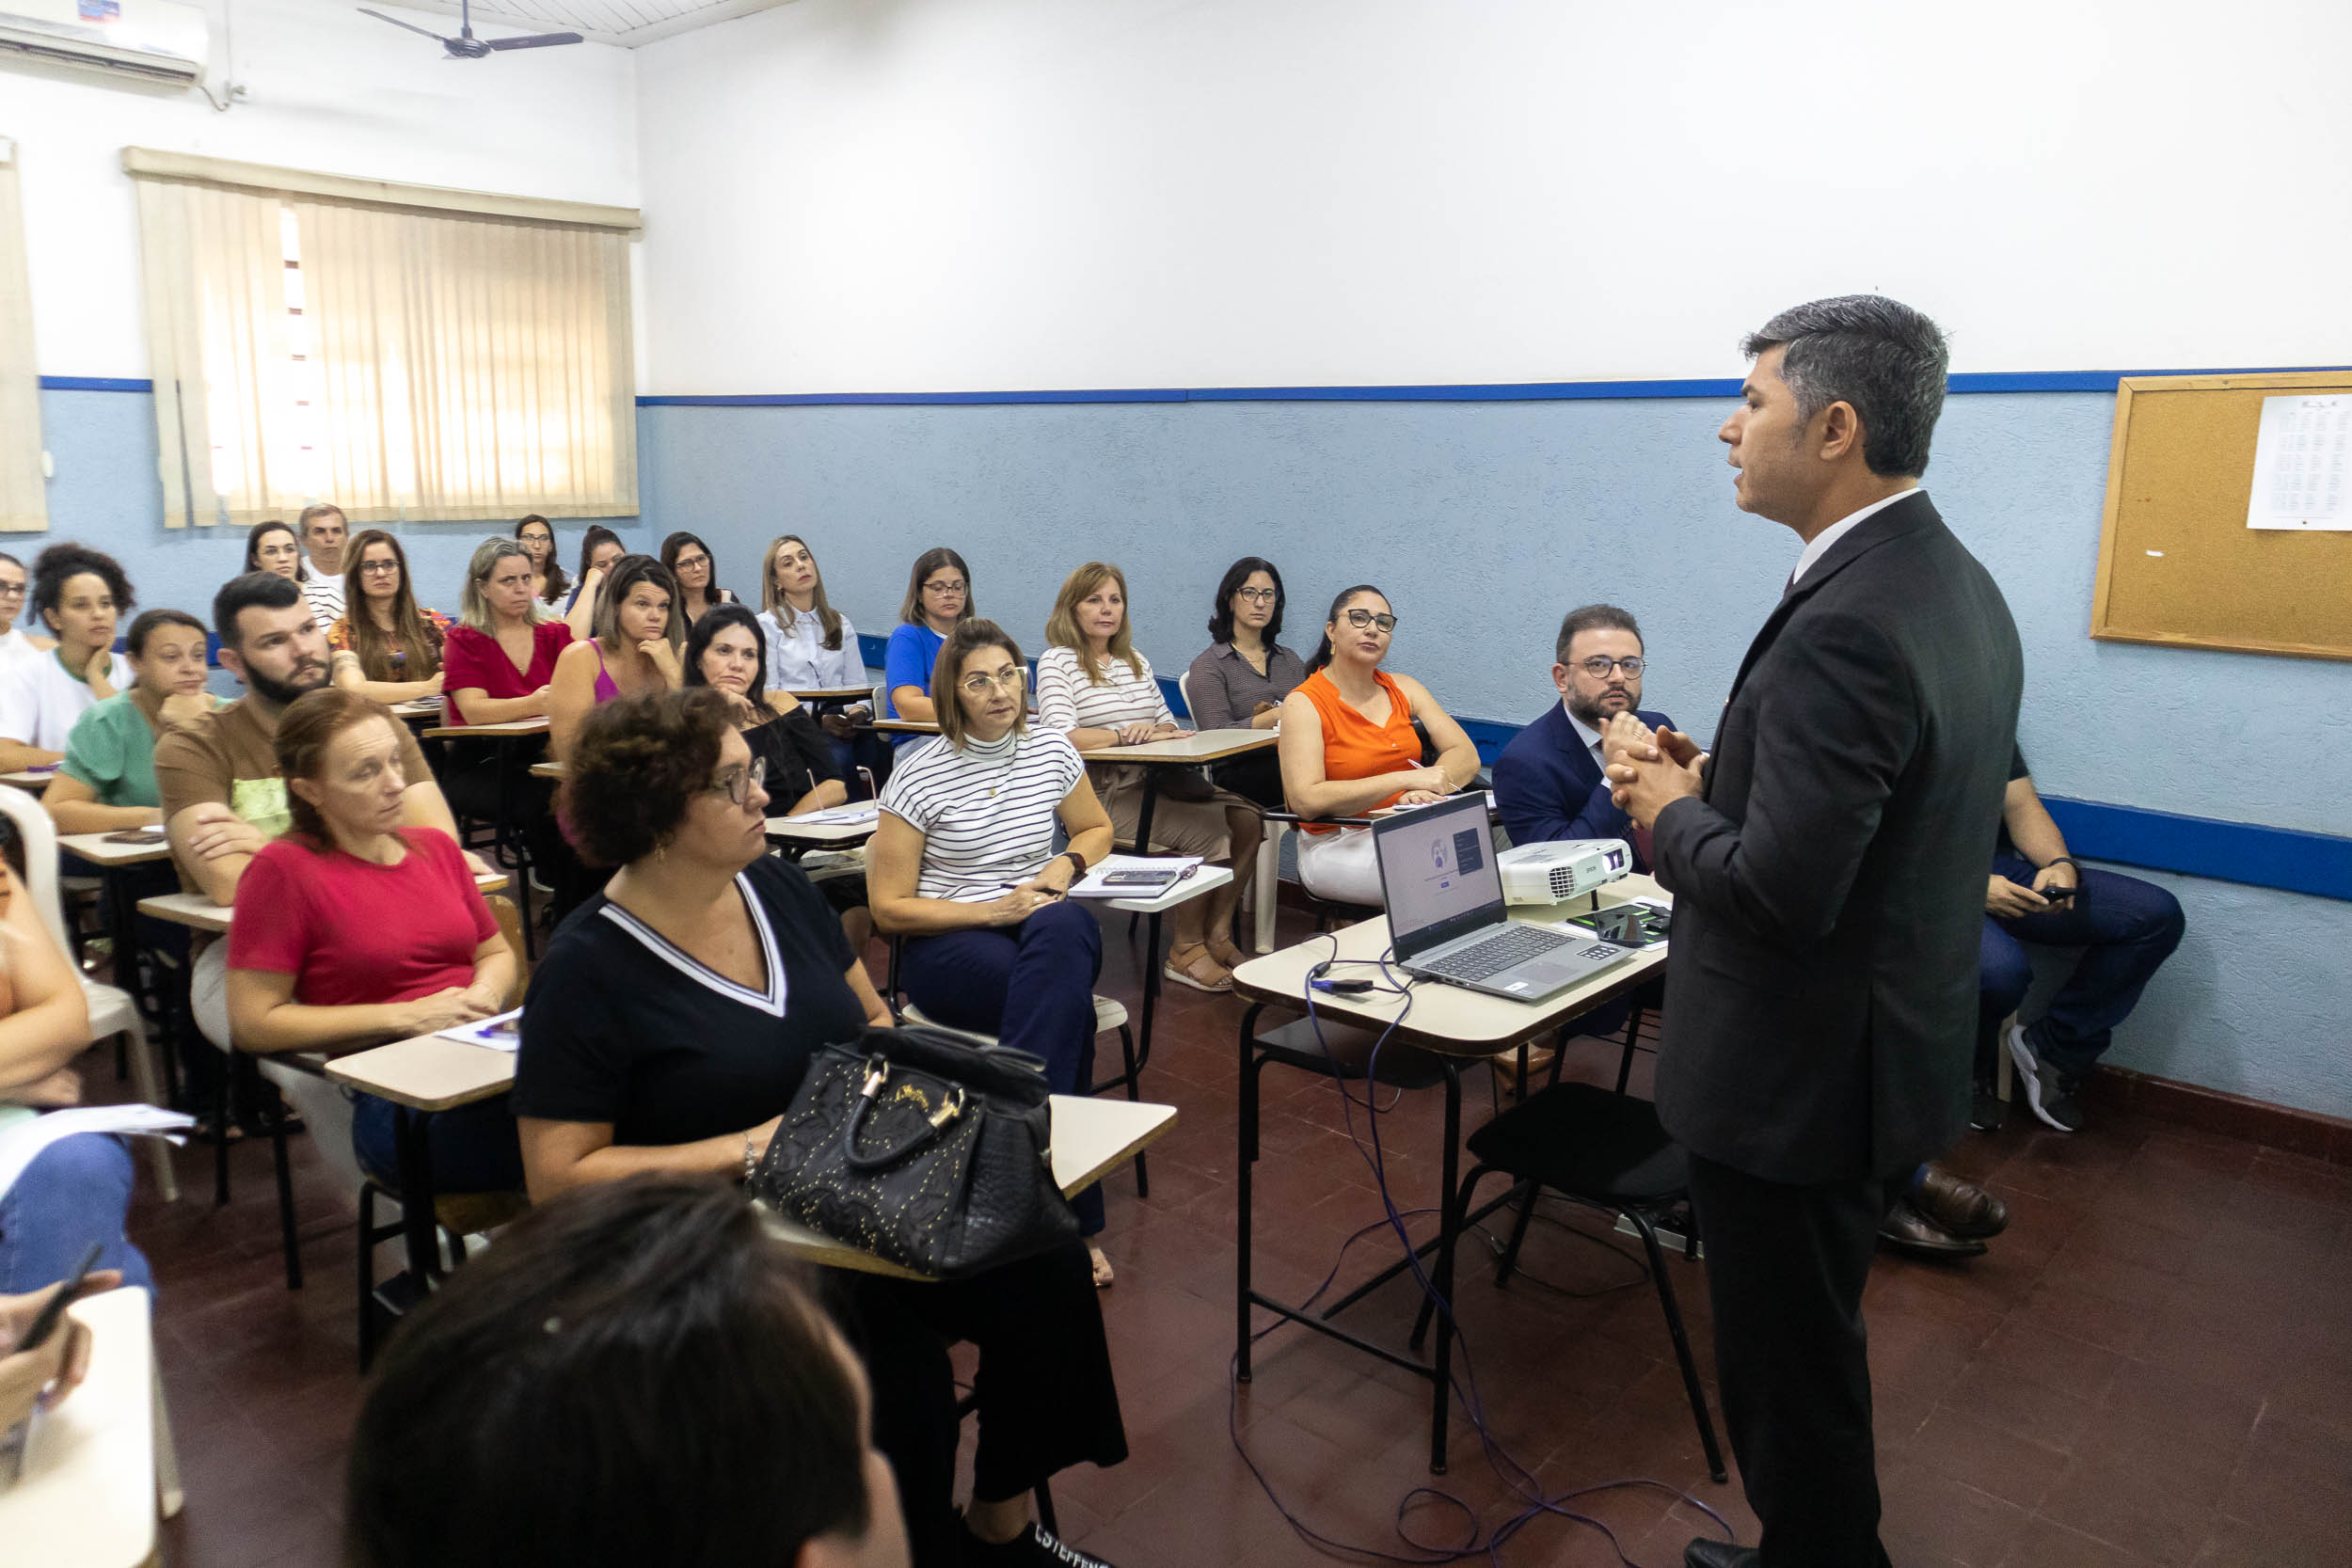 Órgãos públicos de Urupês mobilizam-se em treinamento para aperfeiçoamento da rede de proteção infantil. Foto: Luís Fernando da Silva / Prefeitura Municipal de Urupês.